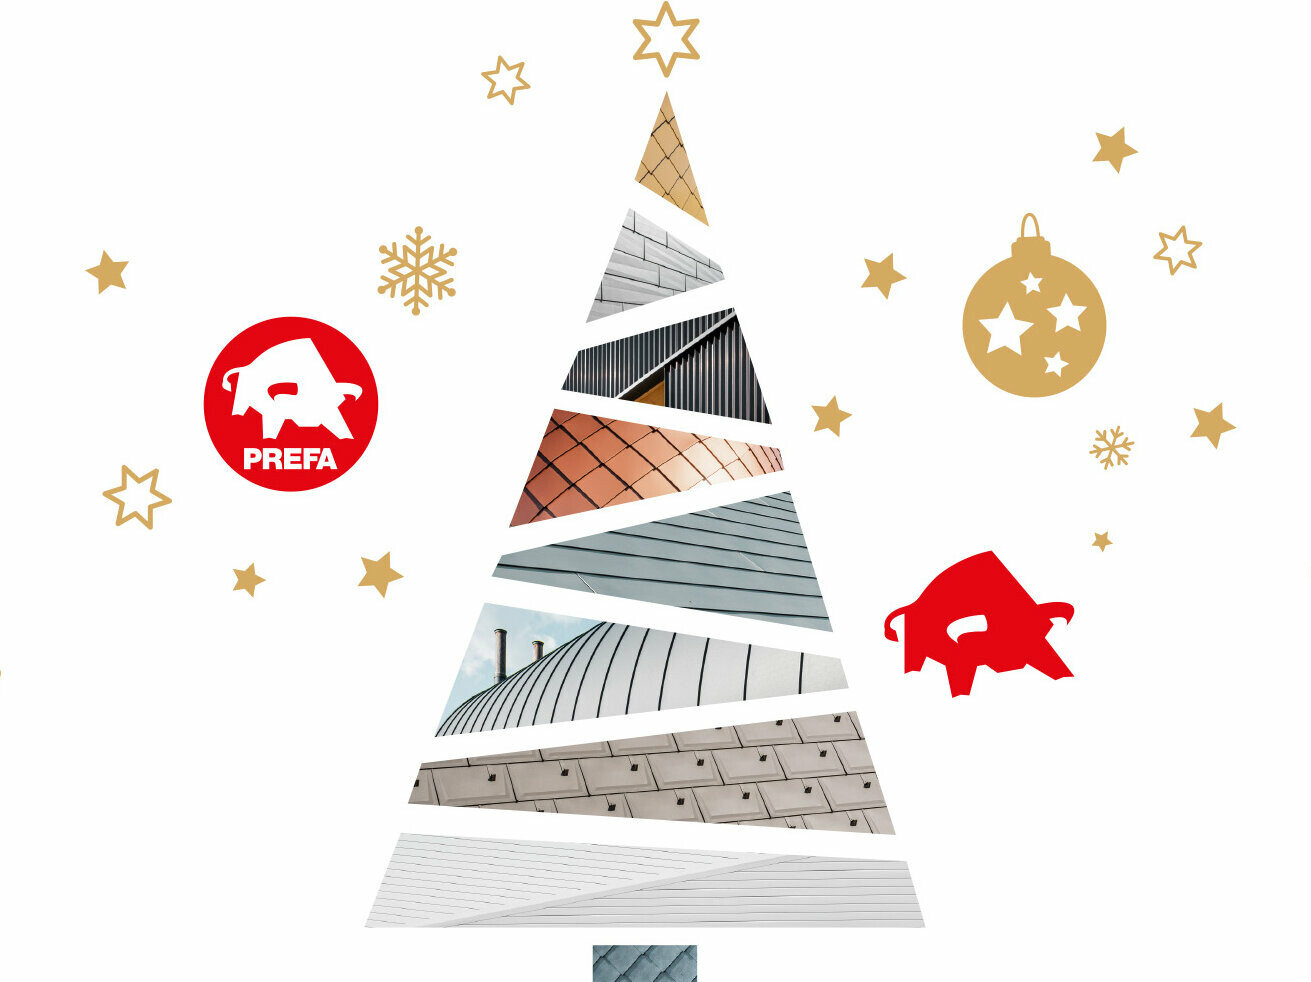 PREFA-Weihnachtsbaum, verkleidet mit verschiedenen PREFA Dach- und Fassadensystemen. Rund herum fliegen Schneeflocken, Sterne, Weihnachtskugeln und das PREFA-Logo. 